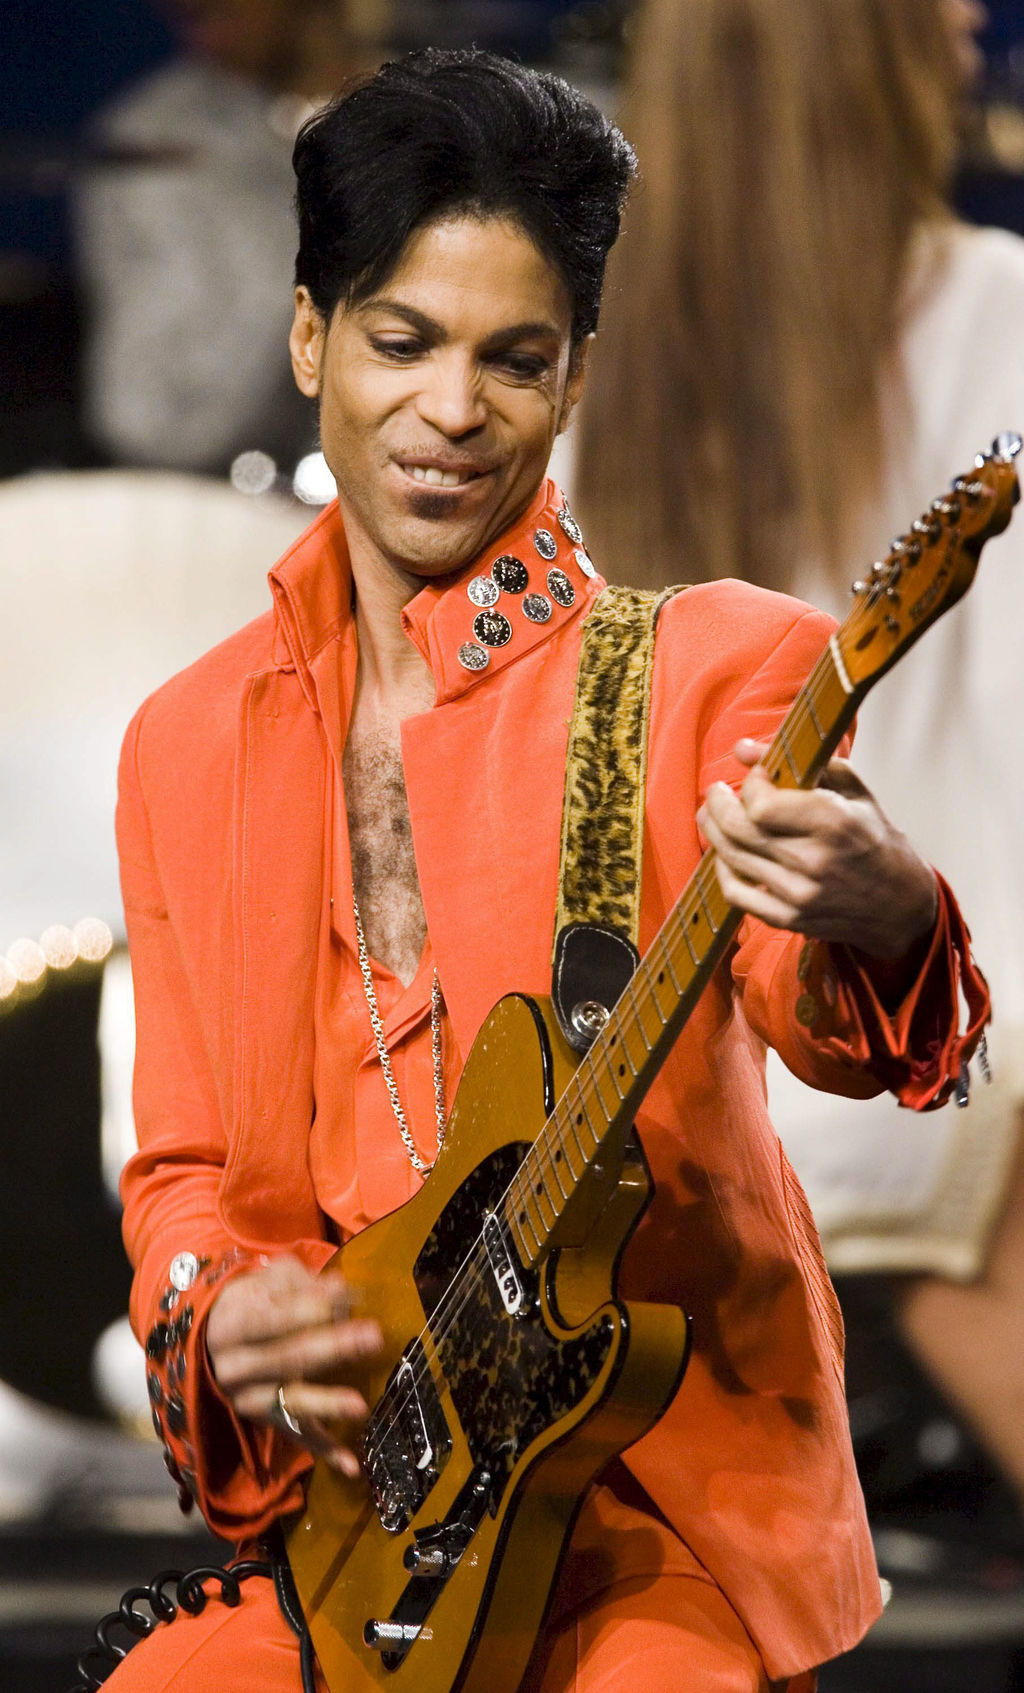 Miles de usuarios han posteado comentarios lamentando la muerte de Prince. (ARCHIVO) 